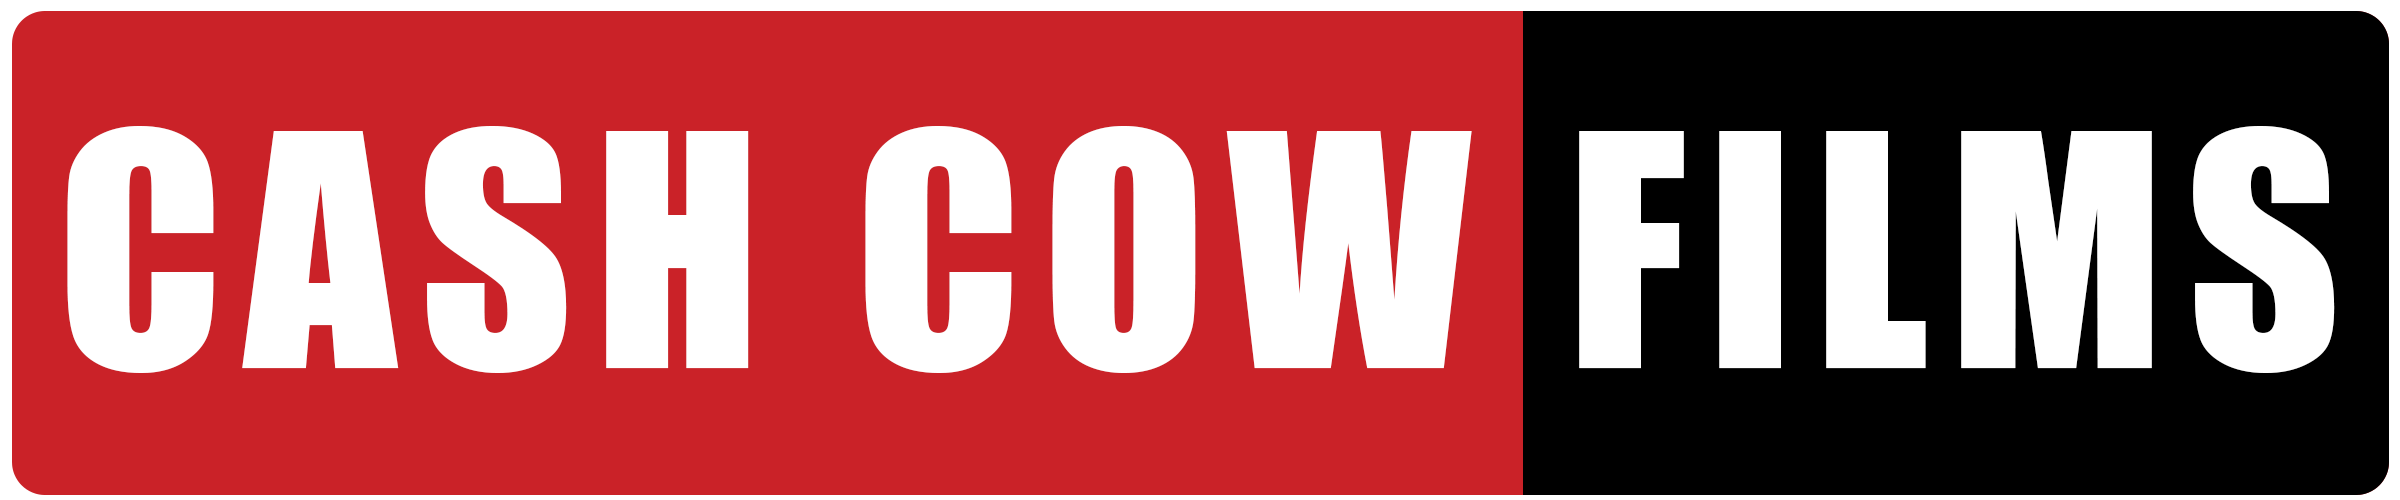 Cash Cow Films